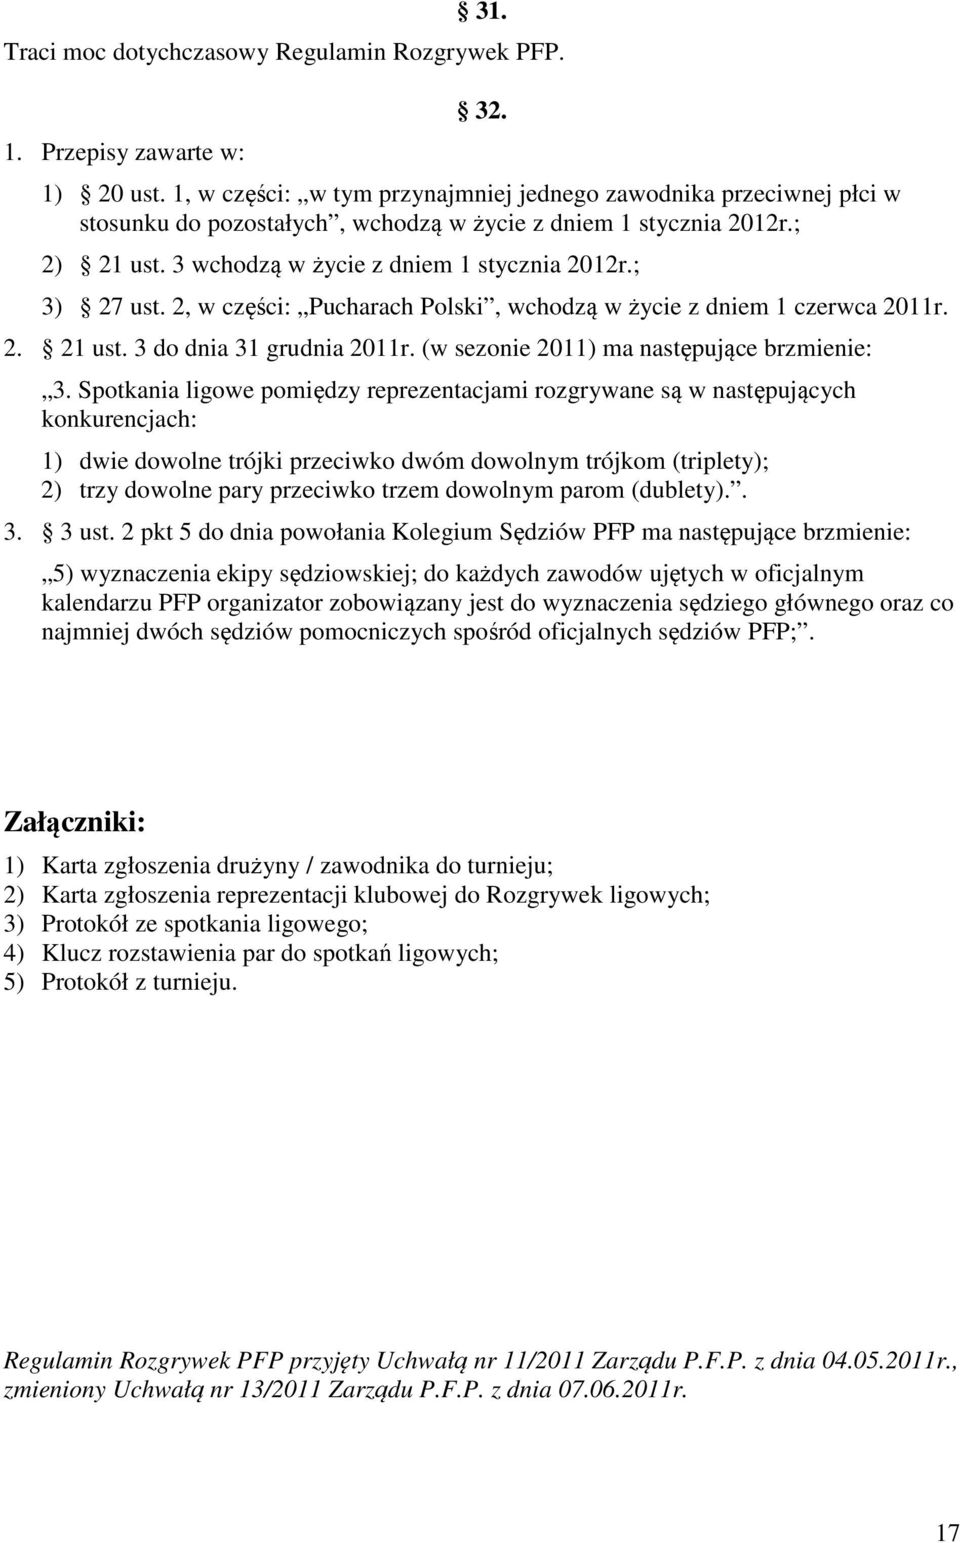 ; 3) 27 ust. 2, w części: Pucharach Polski, wchodzą w życie z dniem 1 czerwca 2011r. 2. 21 ust. 3 do dnia 31 grudnia 2011r. (w sezonie 2011) ma następujące brzmienie: 3.